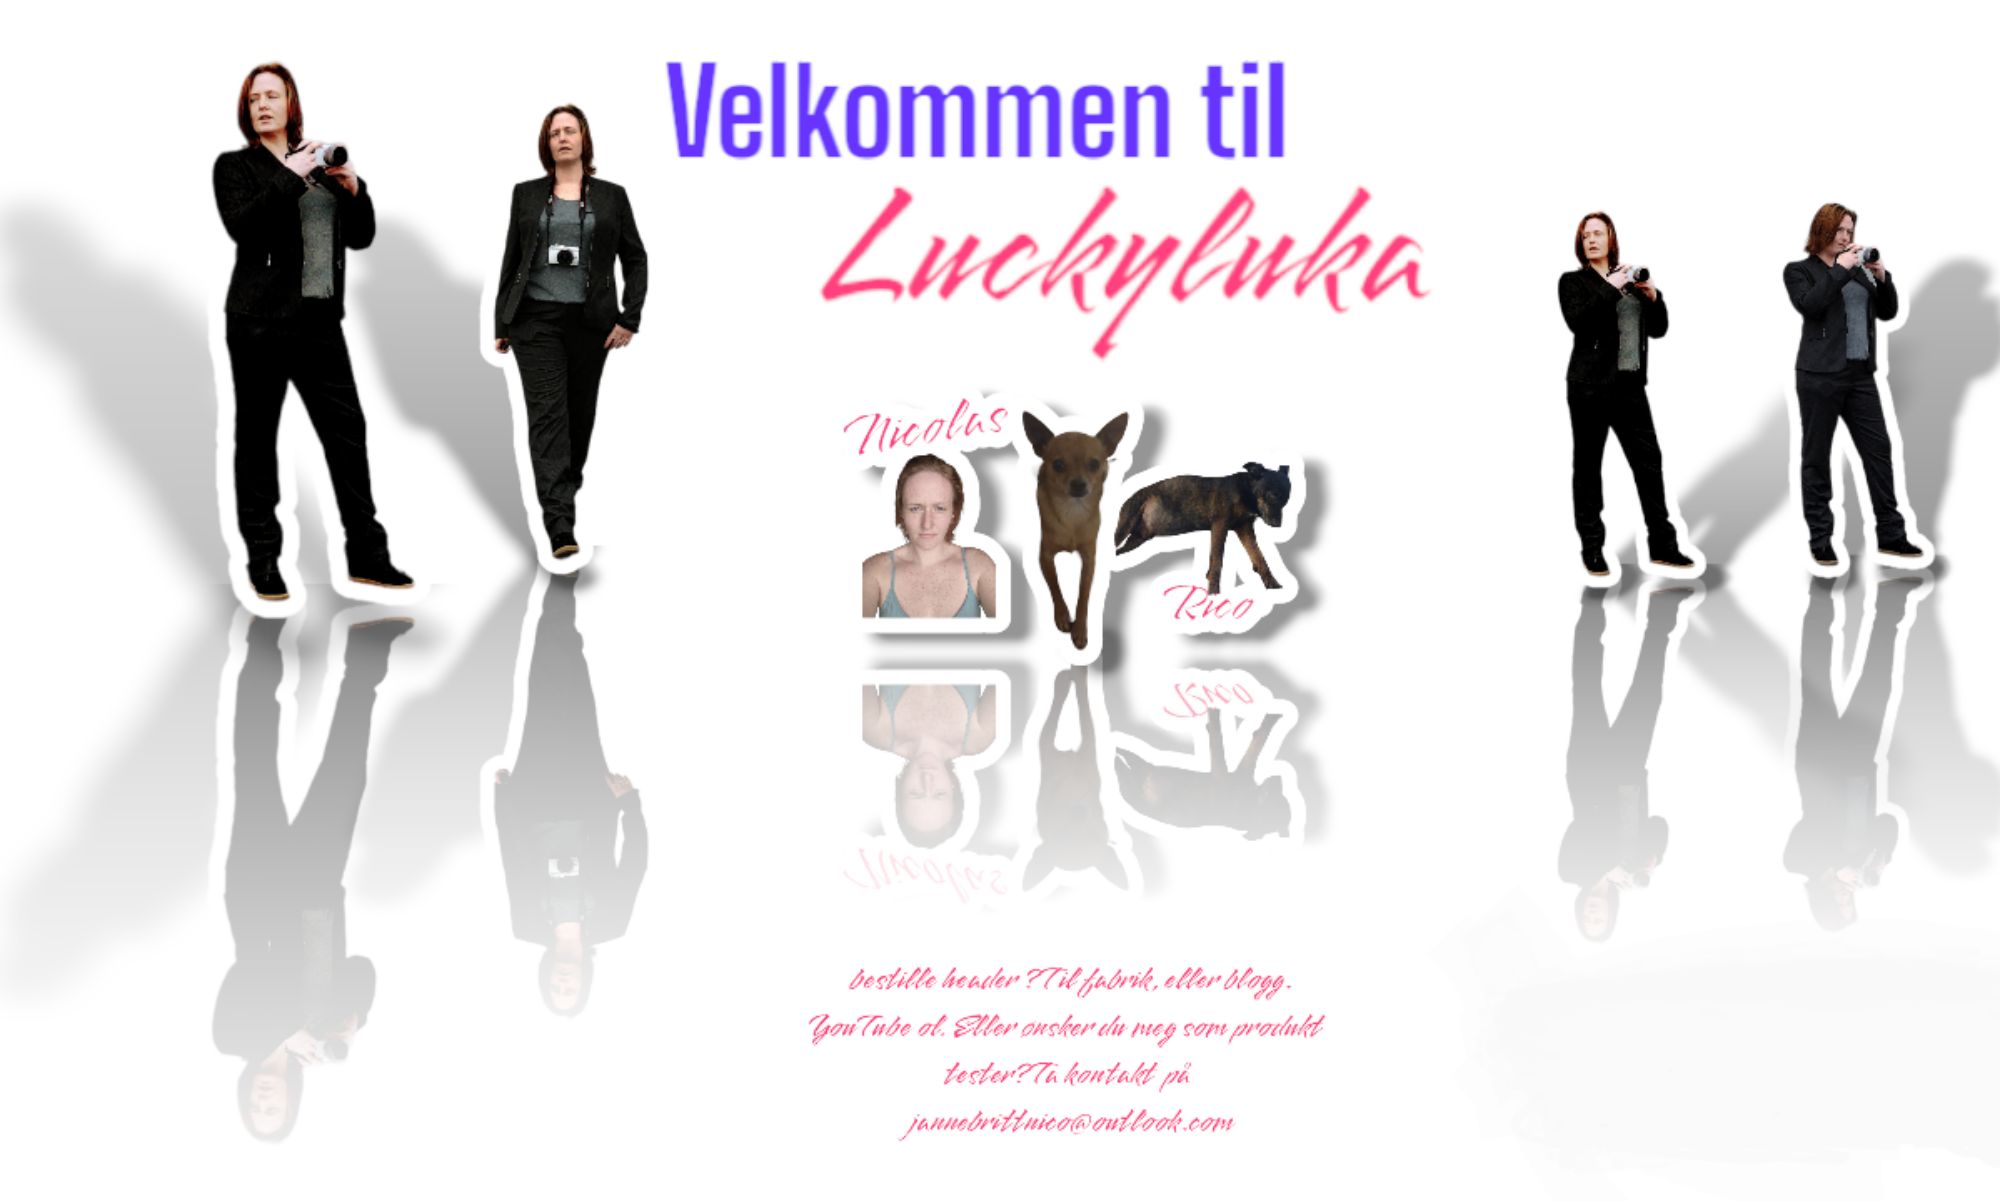 Luckyluka